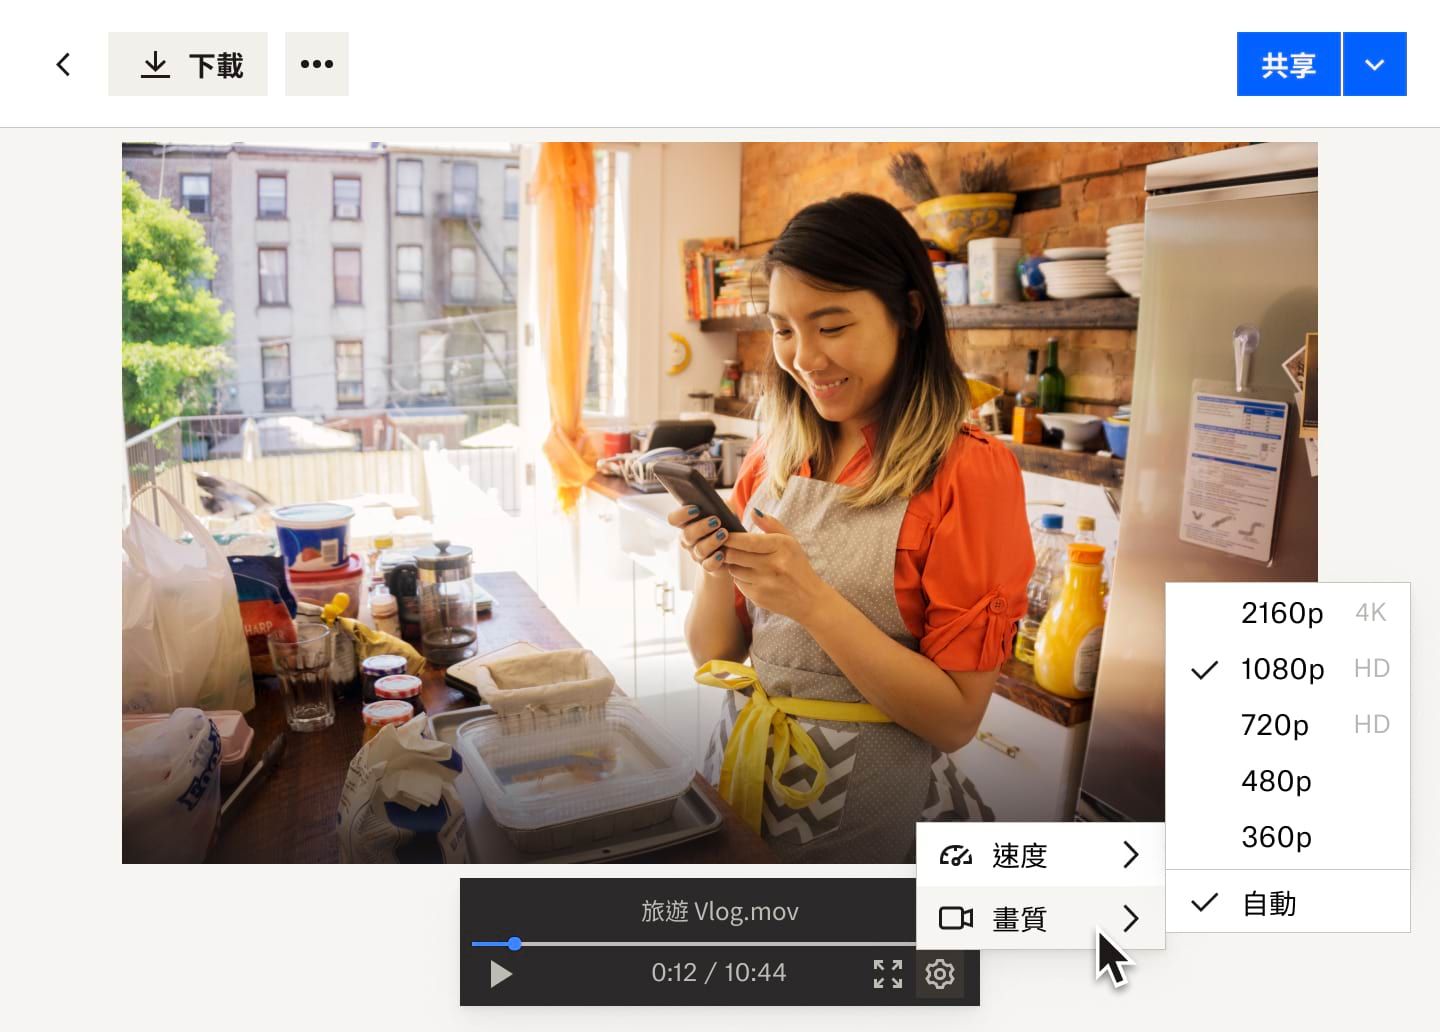 設定按鈕的下拉式選單顯示 Dropbox 影片檔案的影片速度和影片品質選項，影片內容為在麵包店工作的女性。